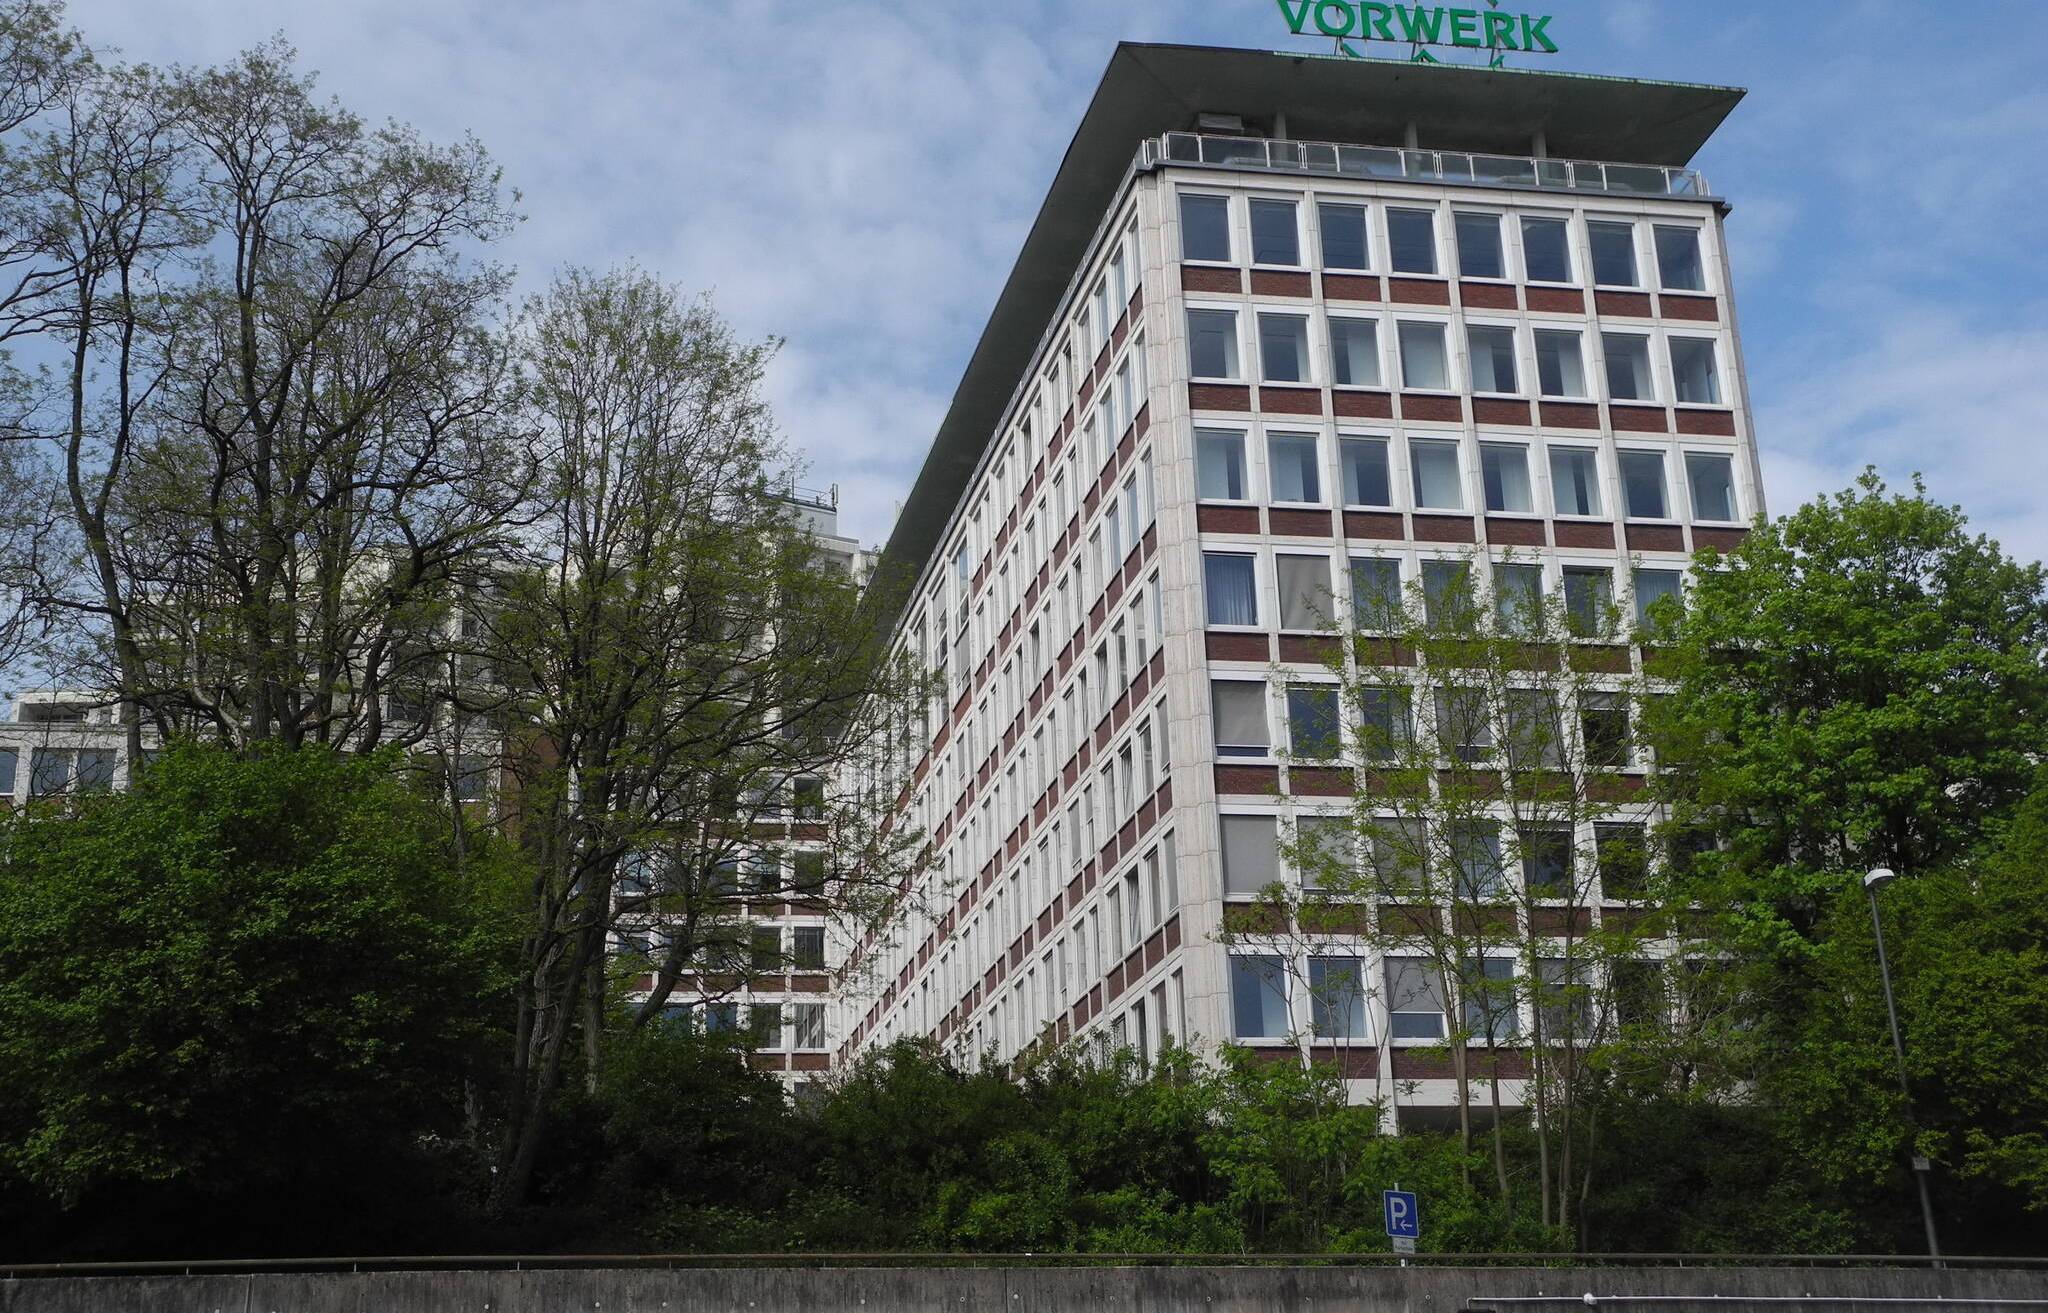  Der Vorwerk-Hauptsitz am Mühlenweg in Barmen. 